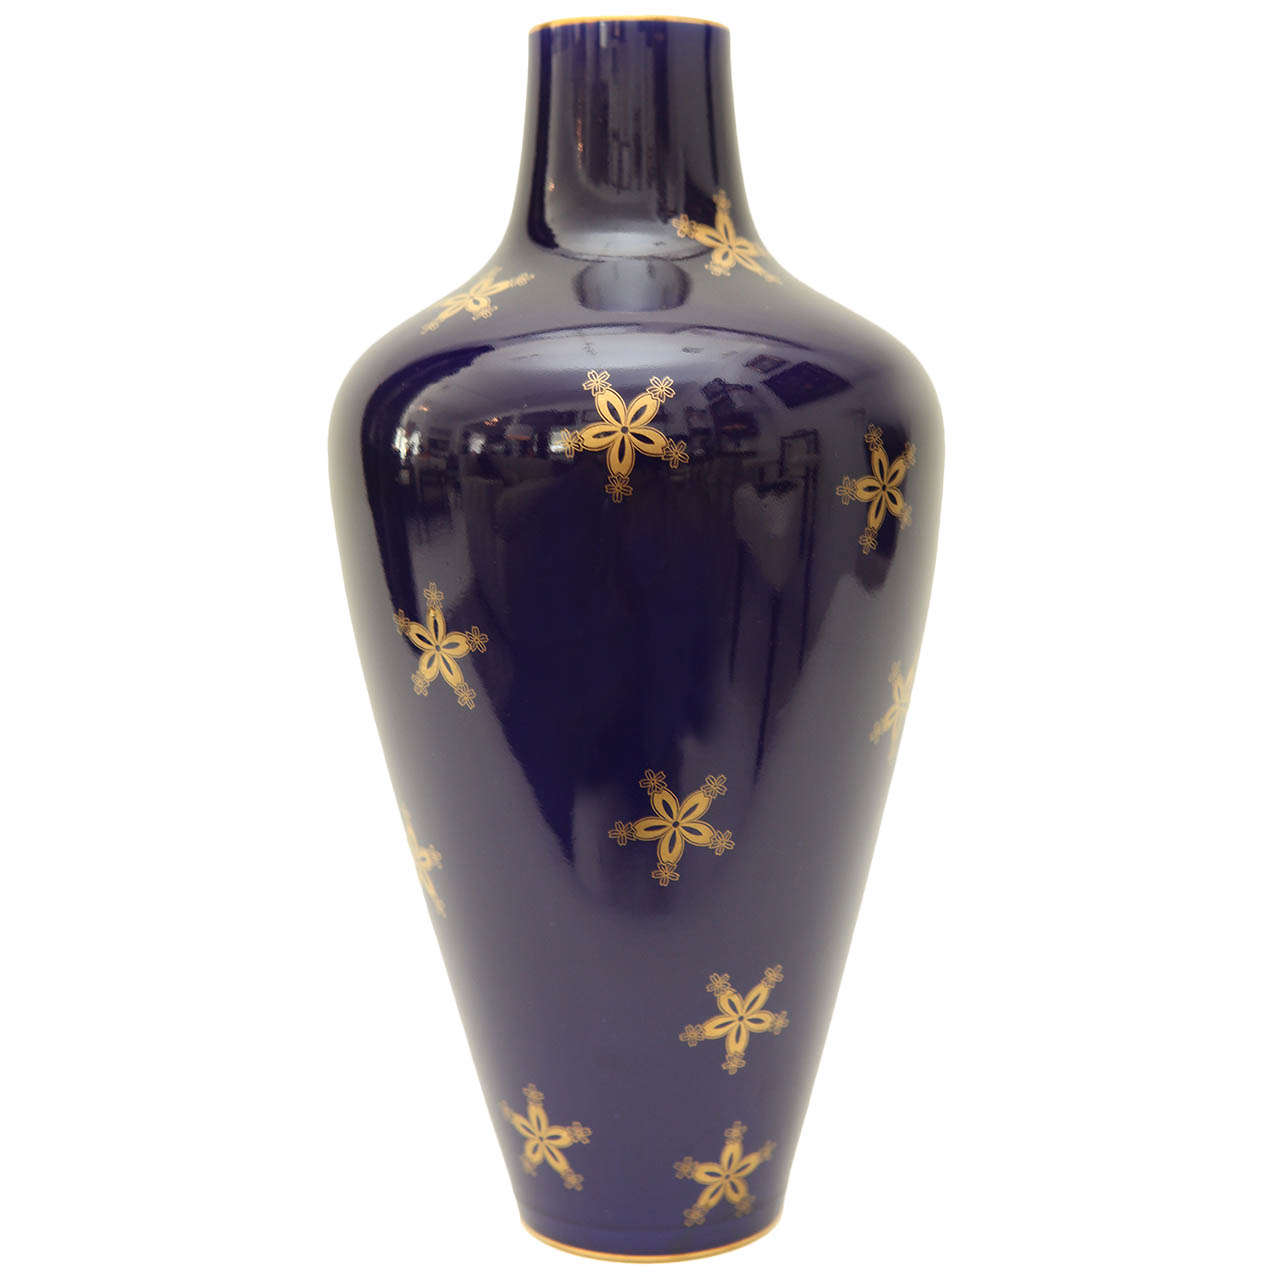 Cobalt Blue and Gold Vase by Sevres Porcelain